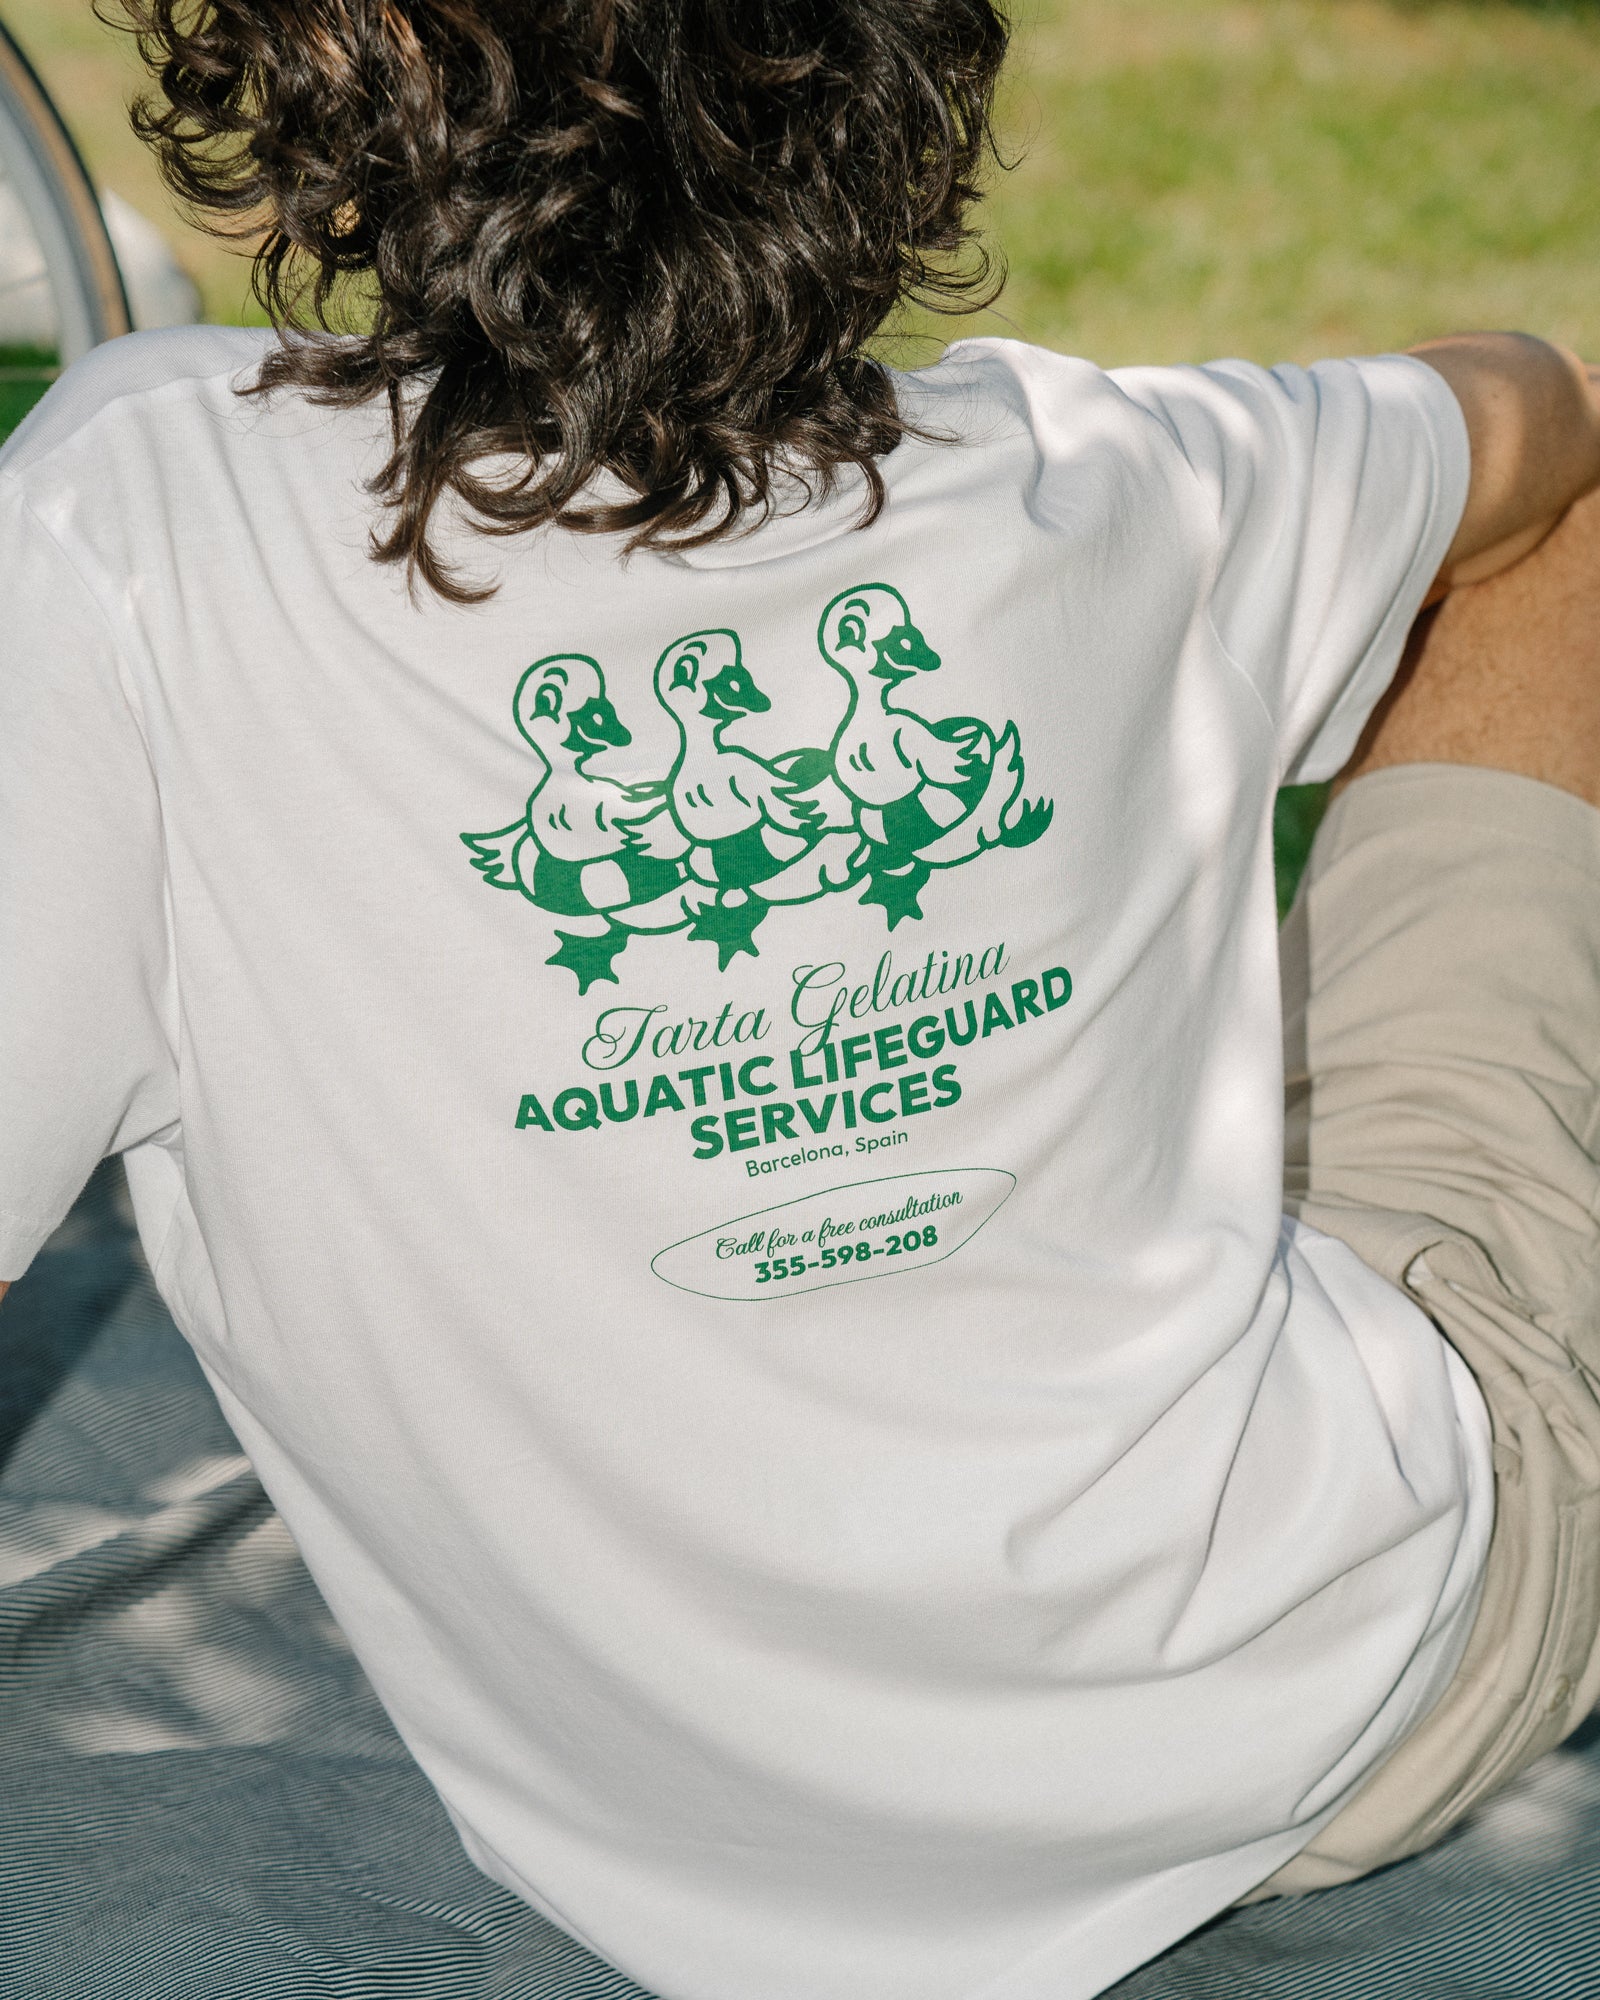 Aquatic Lifeguard Services T-shirt